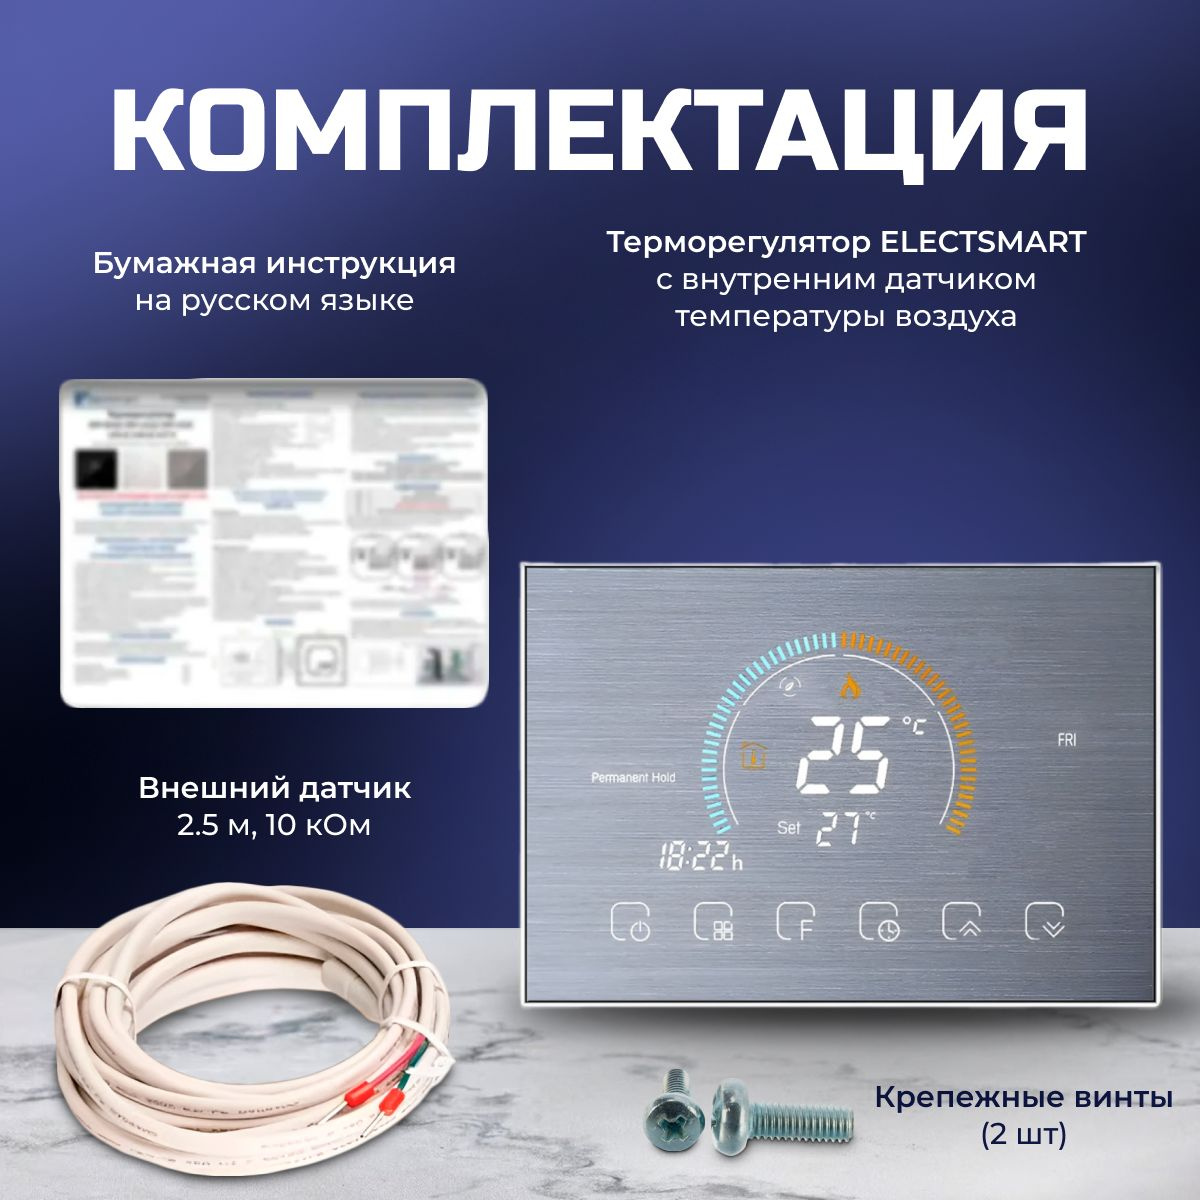 Комплектация 1. Терморегулятор ELECTSMART EST-520 2. Паспорт-инструкция на русском языке 3. Фирменная коробка 4. Крепления 5. Датчик температуры пола 2,5 метра 10 кОм